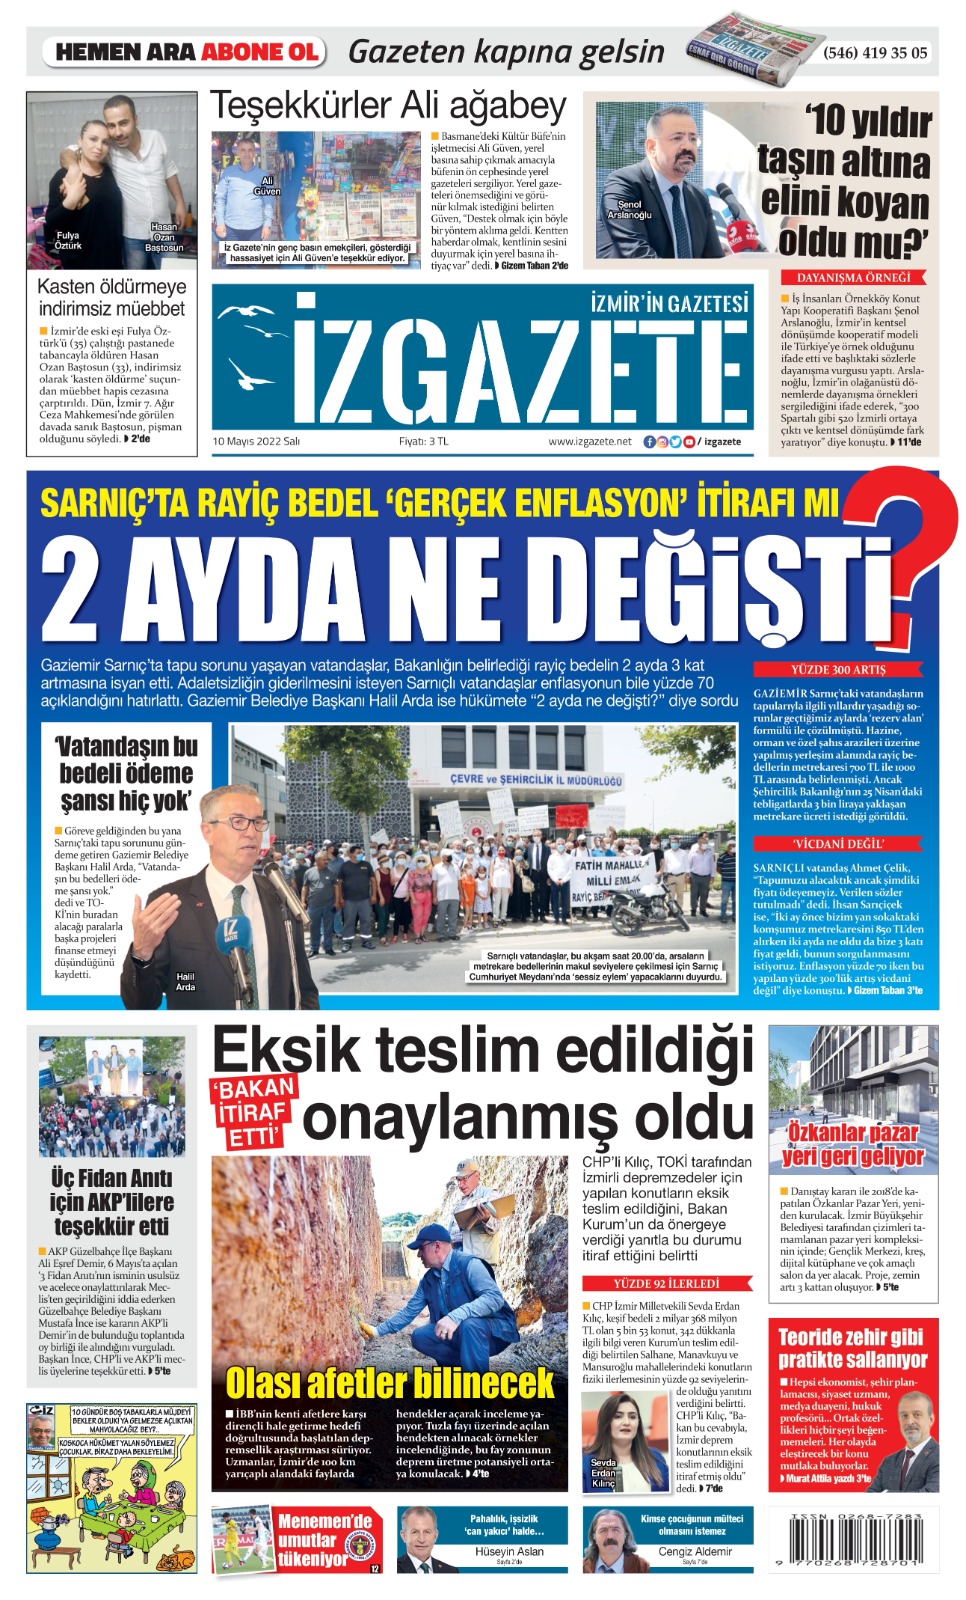 İz Gazete - İzmir'in Gazetesi - 10.05.2022 Manşeti